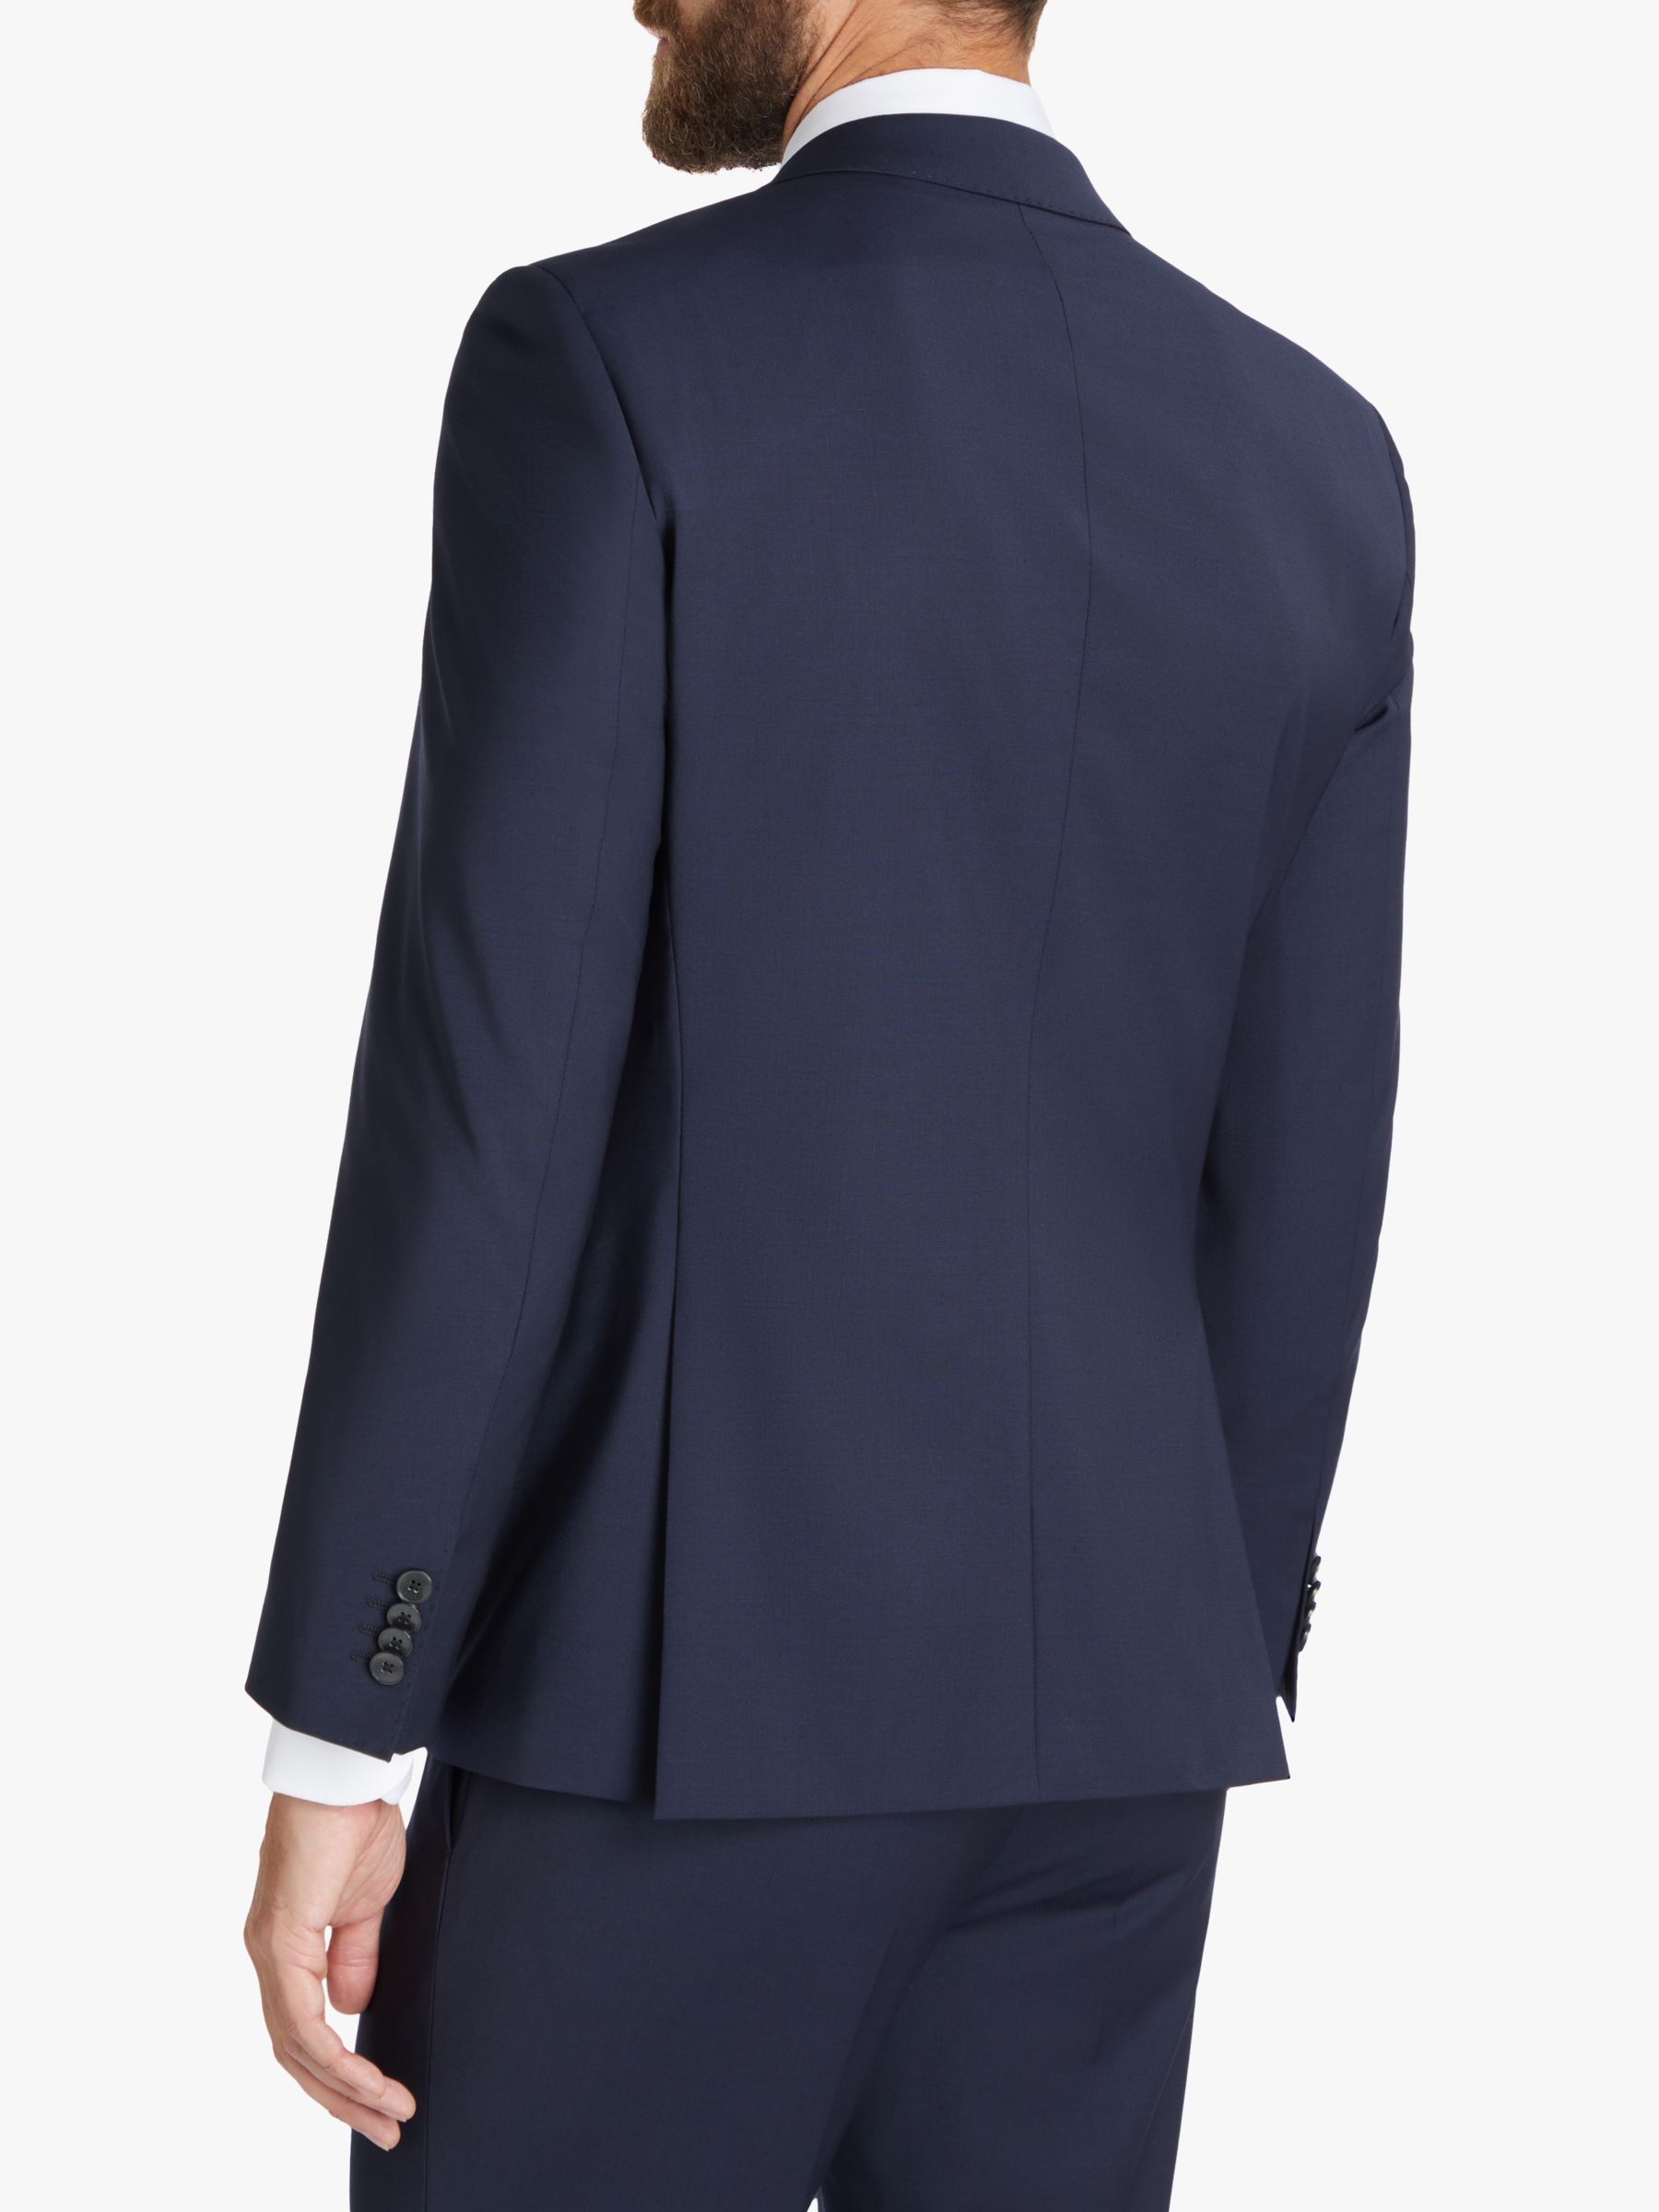 HUGO Virgin Wool Slim Fit Check Suit Jacket, Dark Blue, 36R